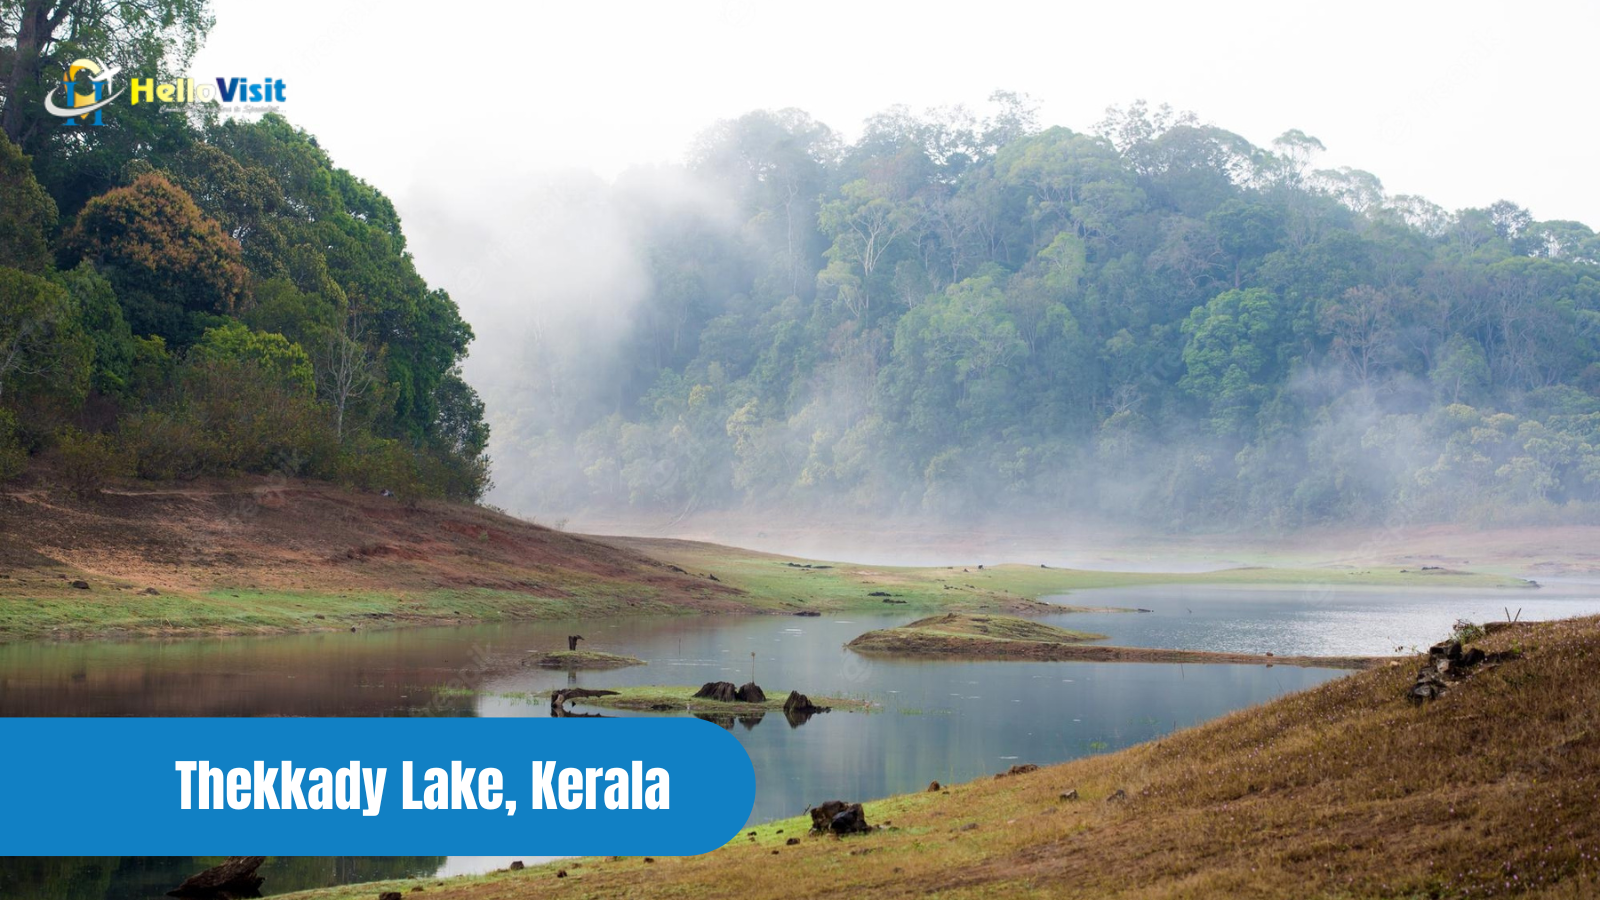 Thekkady Lake, Kerala